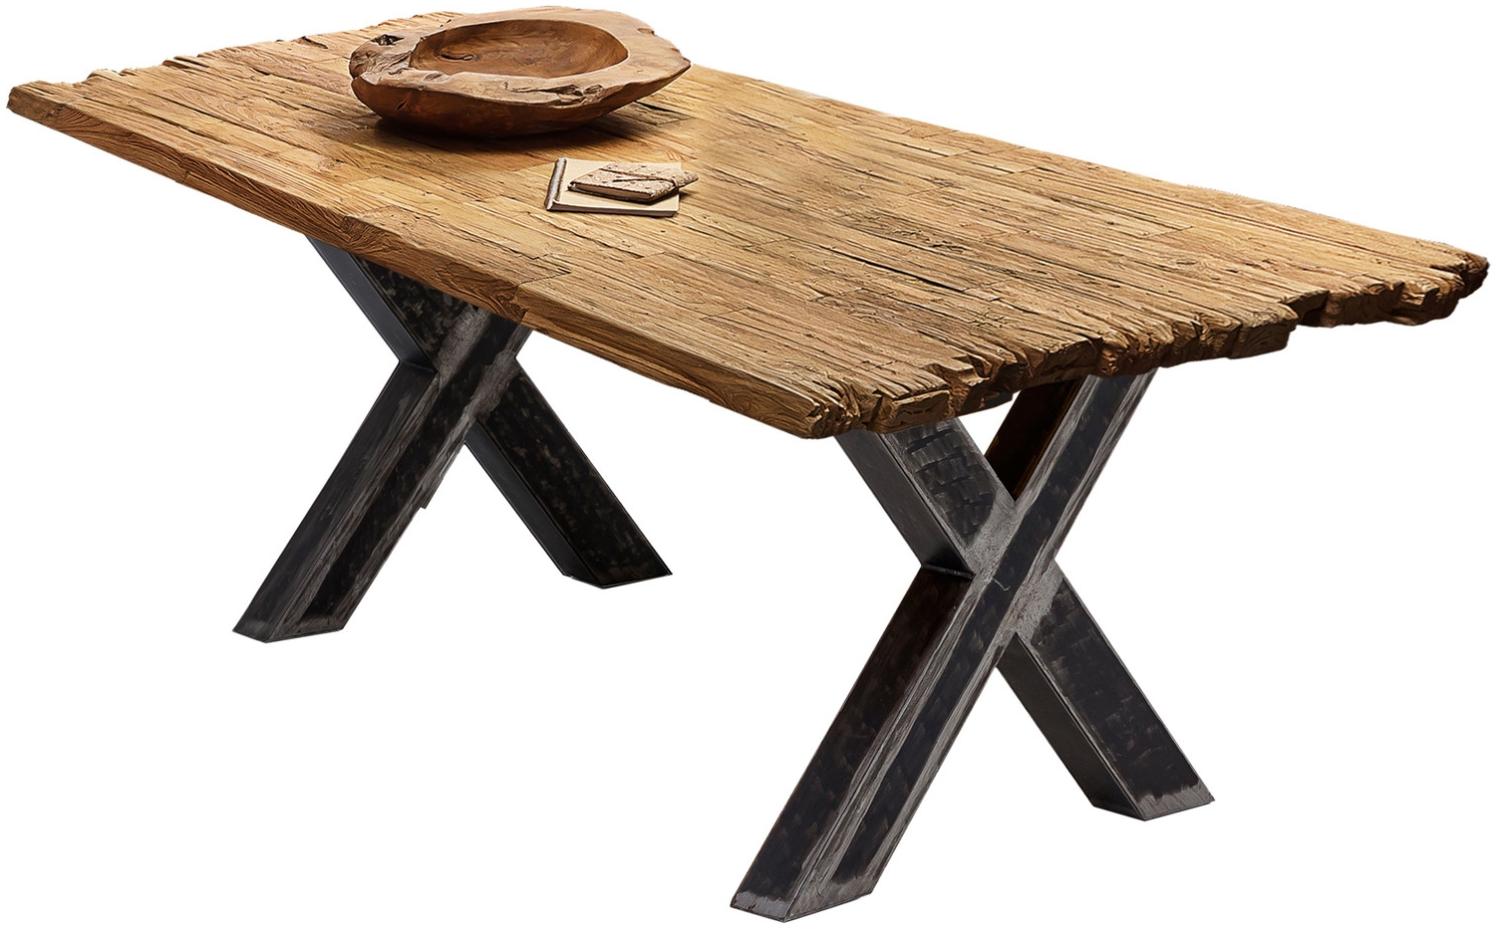 Sit Möbel Tische & Bänke Tisch 180x100 cm, Platte recyceltes Teak natur, X-Gestell Metall used look, klar lackiert Bild 1